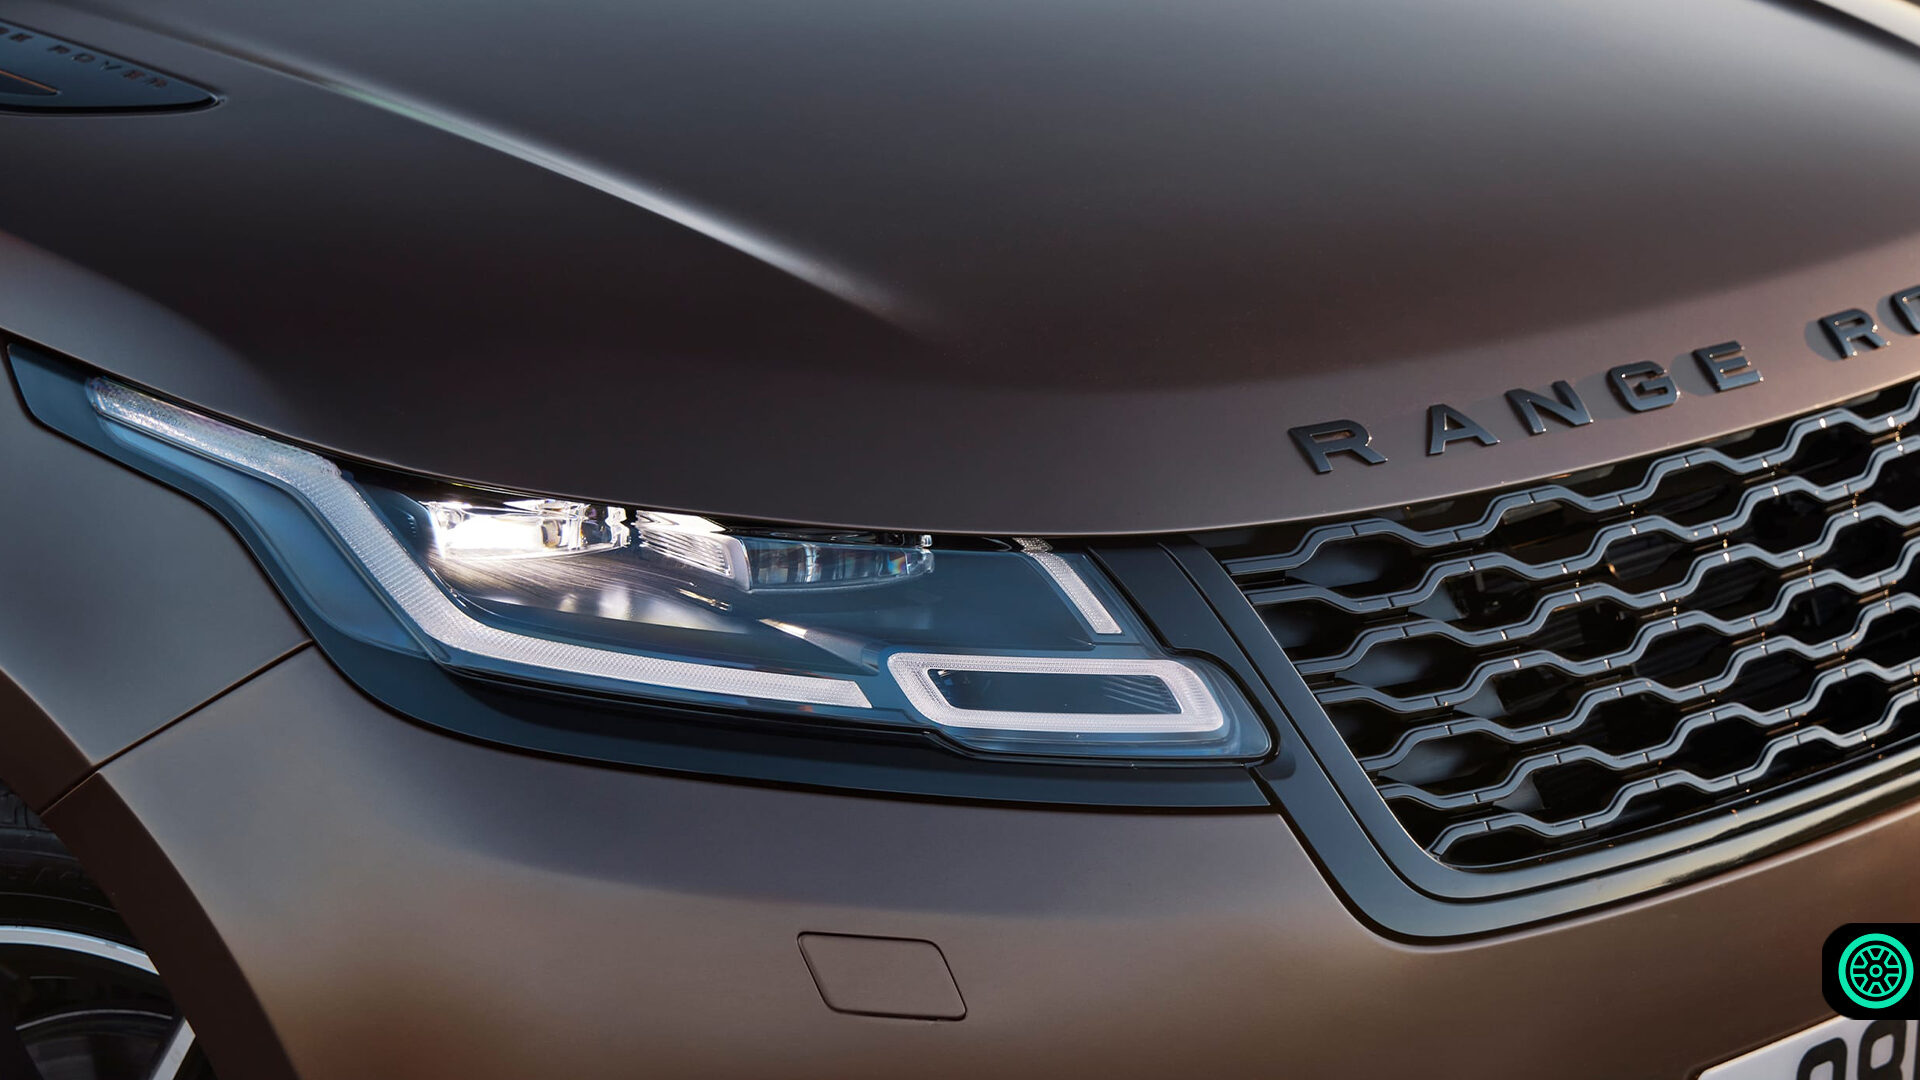 2021 Range Rover Velar teknolojik anlamda güncelleniyor 1